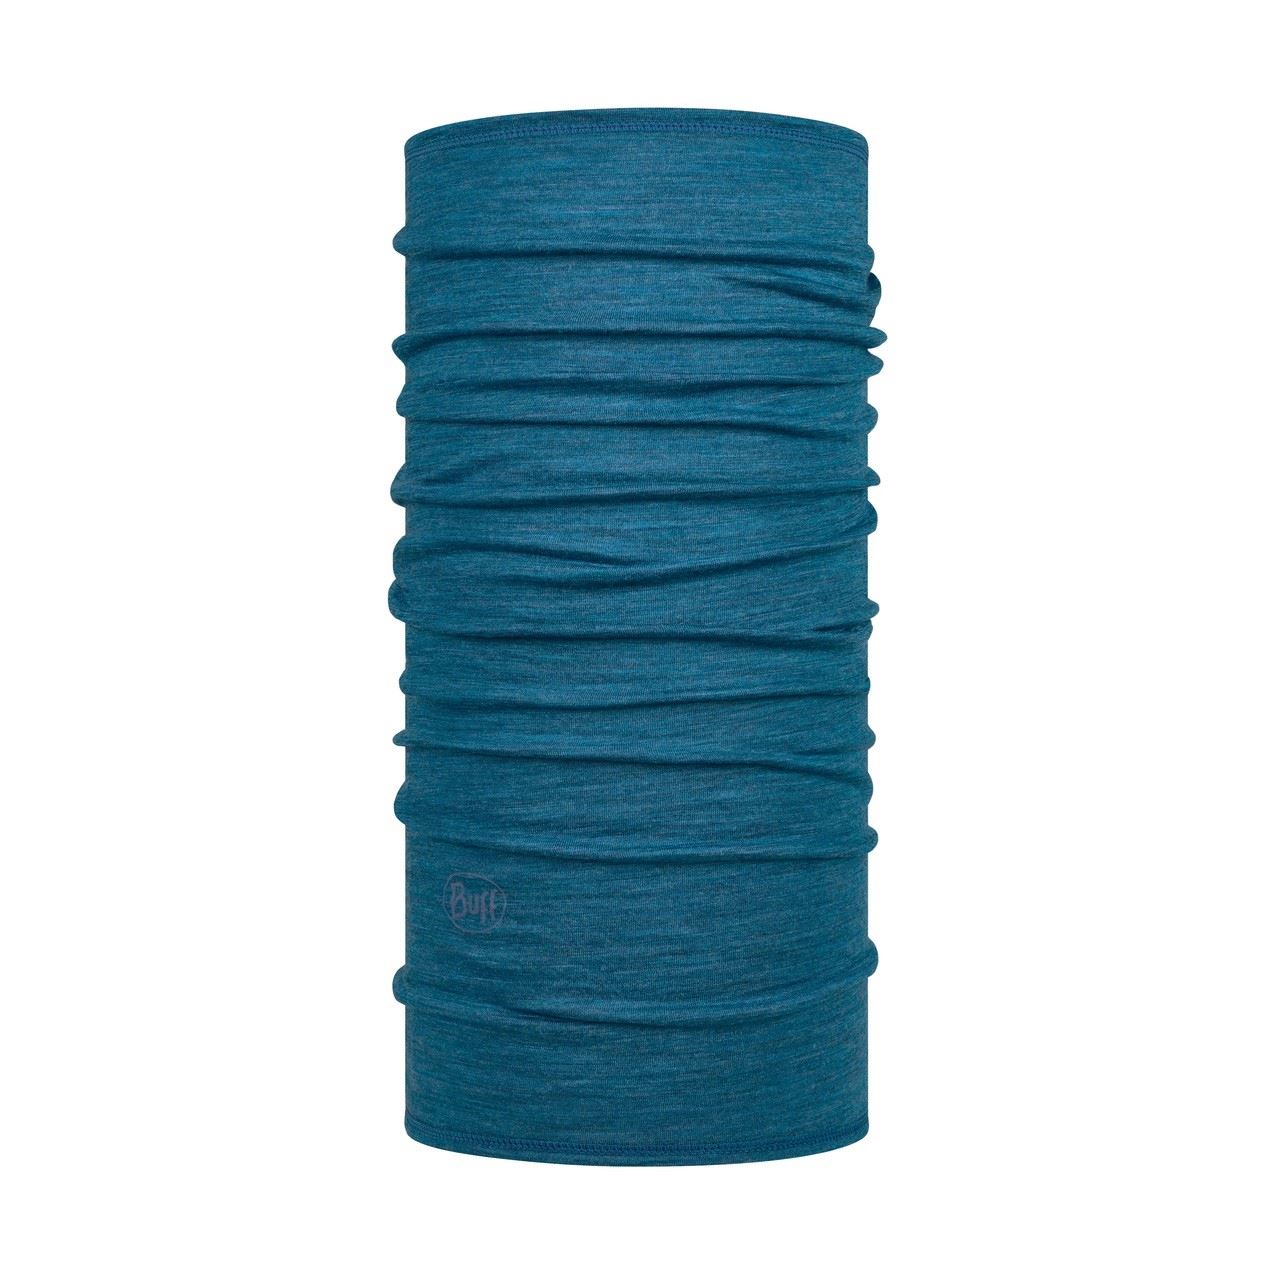 Solid Dusty Blue Lightweight Merino Wool Tuch Buff